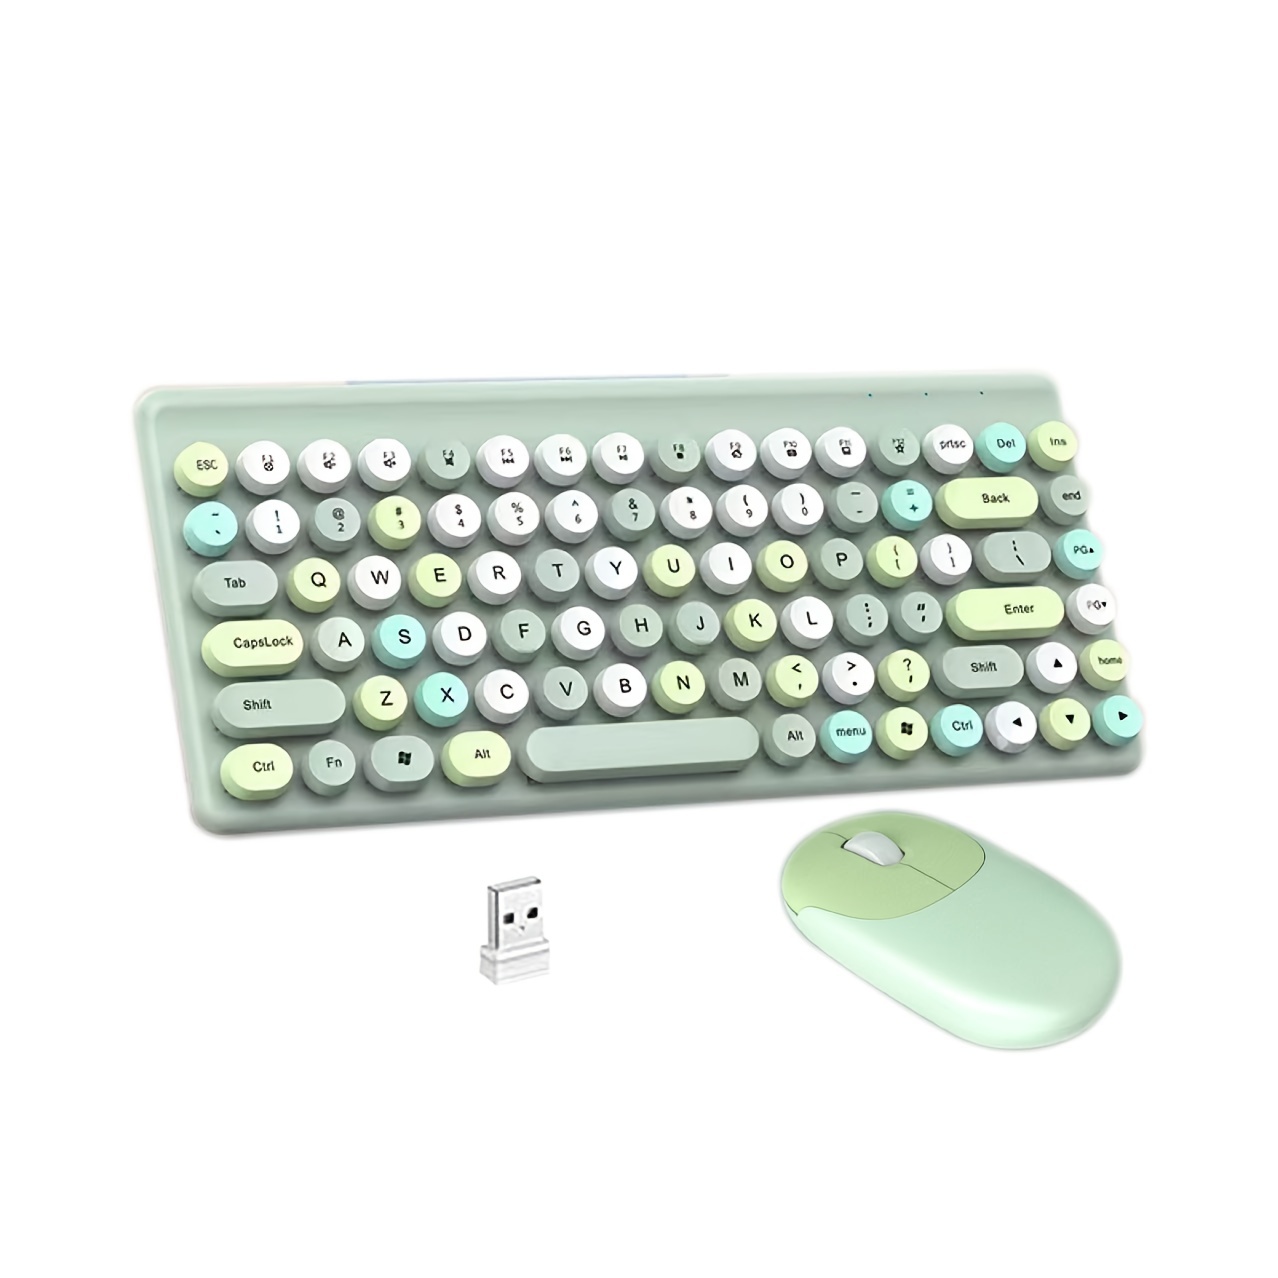  Juego de teclado y mouse inalámbricos, dulce combinación de  lindos colores, USB 2.4G, teclado ergonómico y mouse para computador  portátil y de escritorio, Mac. : Electrónica